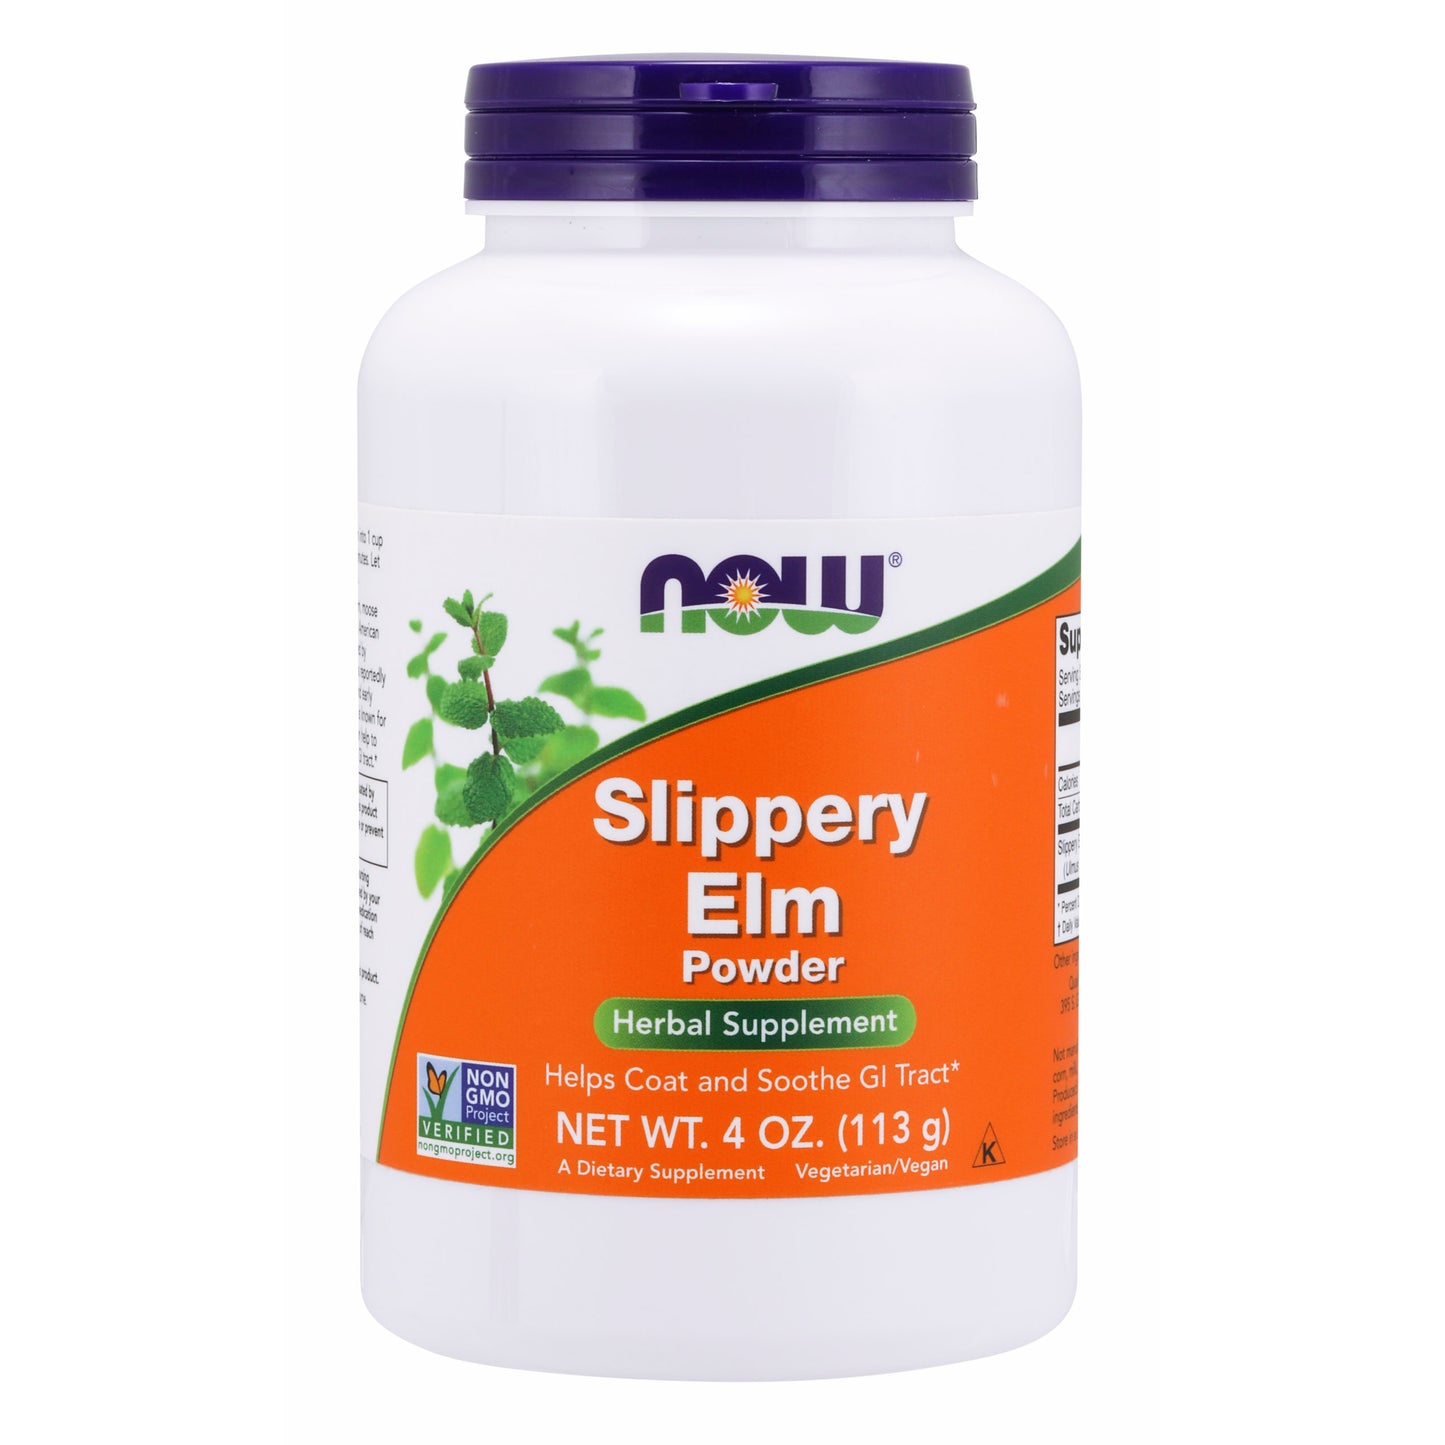 Slippery Elm Powder (113 g)